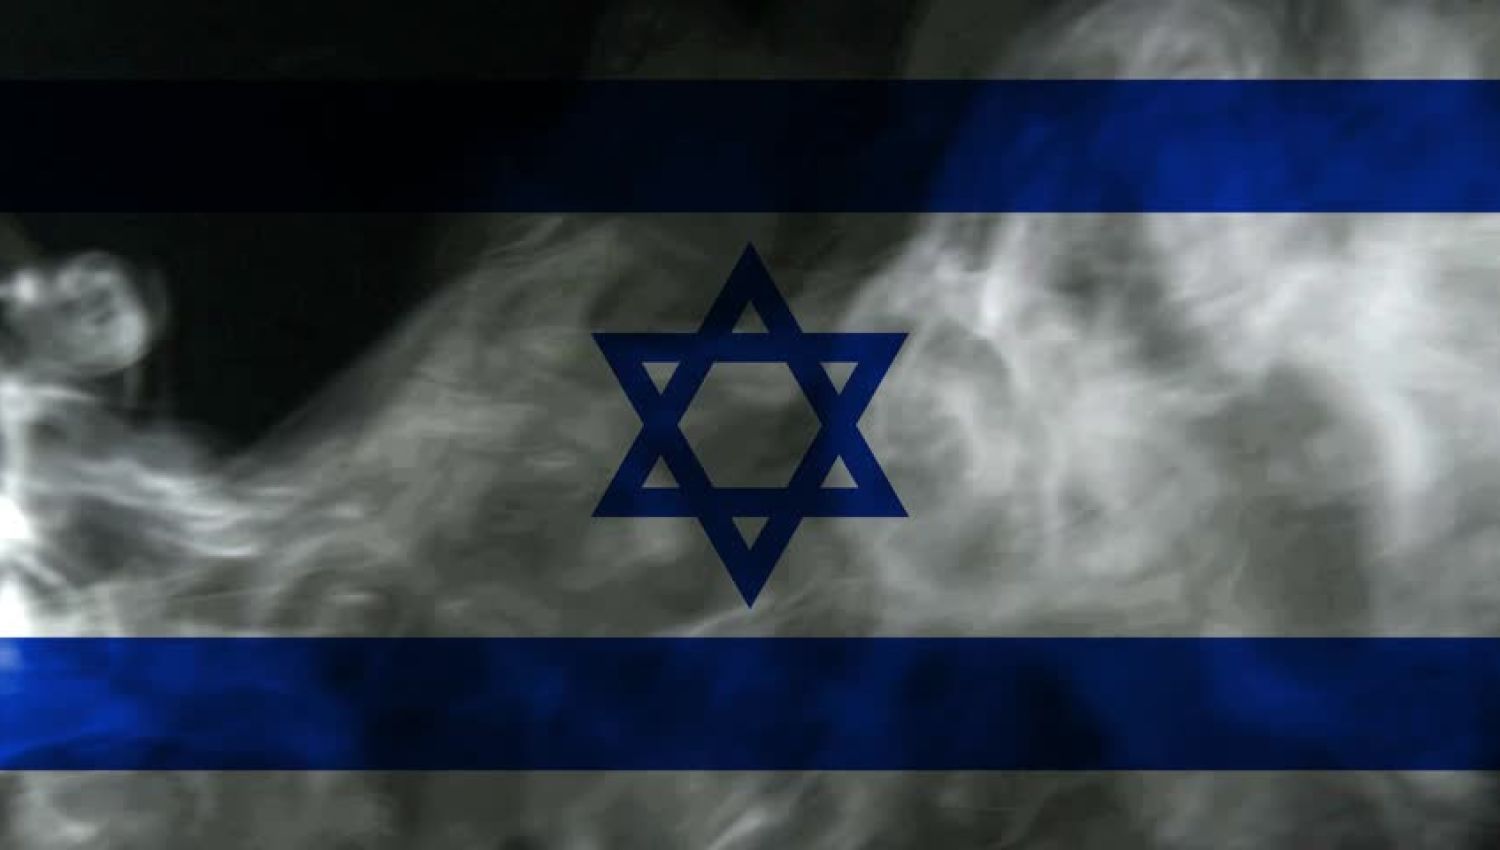 تراجع الردع الأمريكي: "إسرائيل" تعيد بلورة استراتيجياتها!